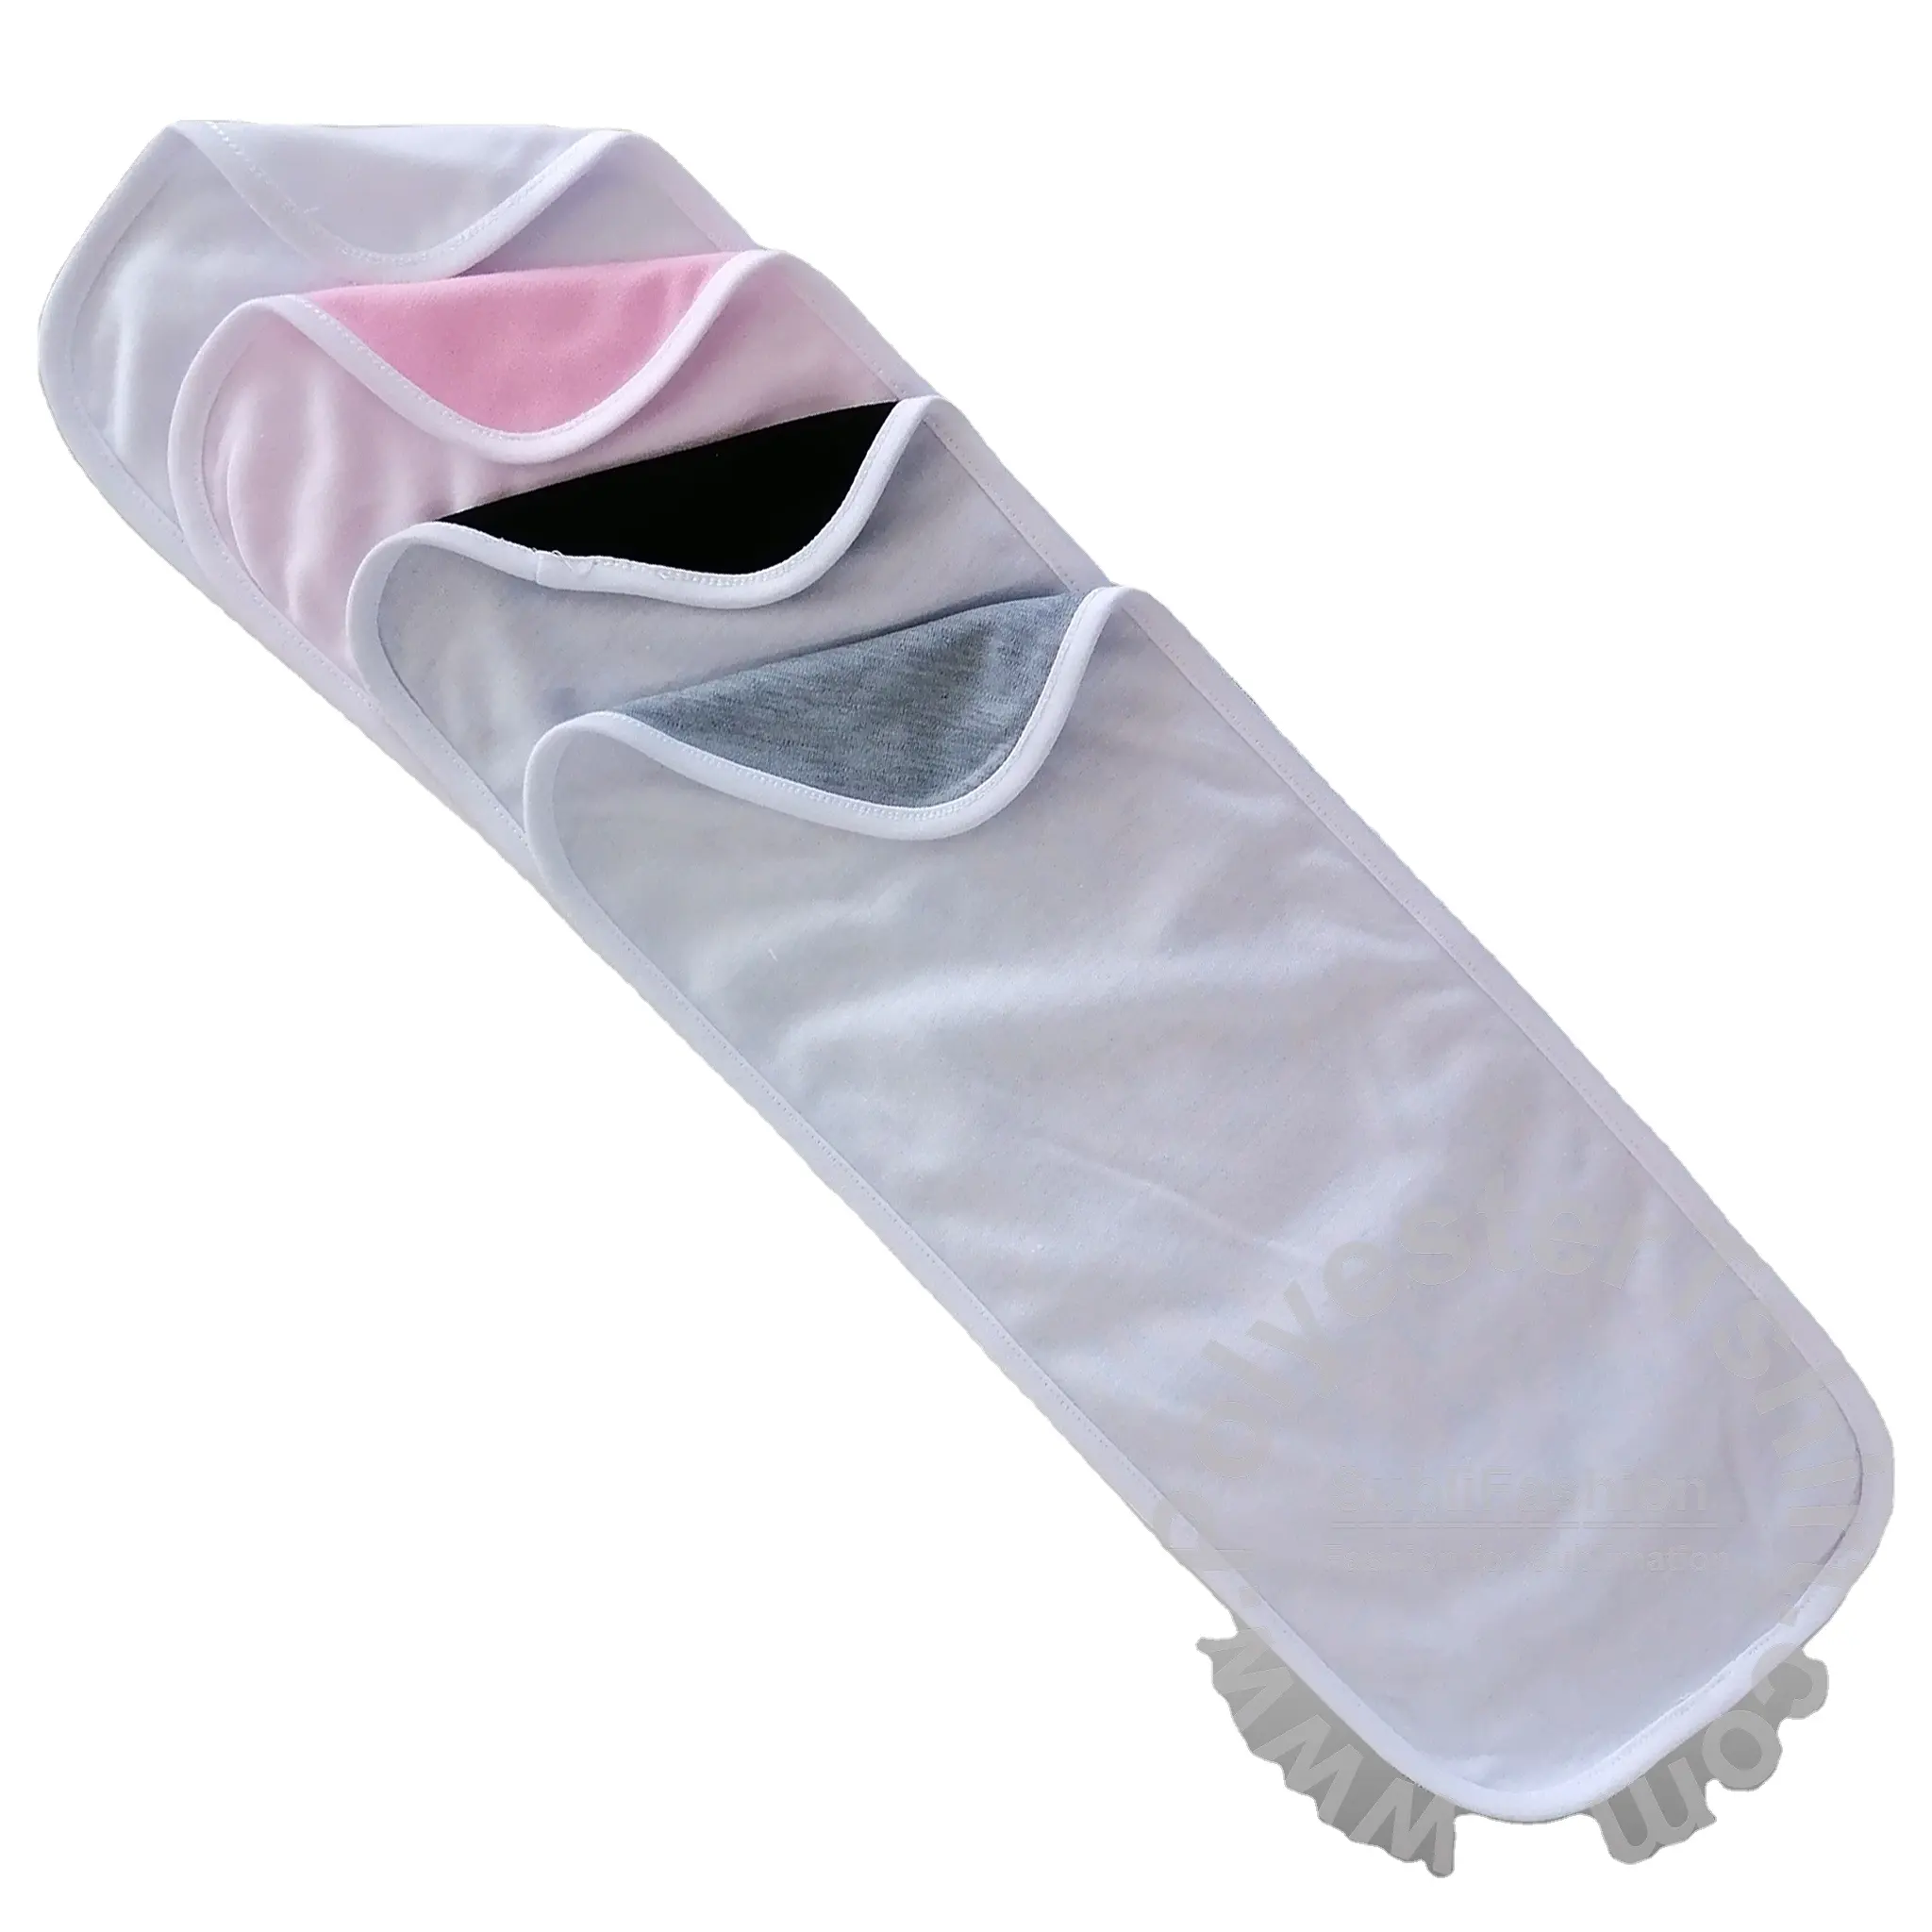 승화 공백 아기 담요 많은 면 느낌 2 개의 층 46x18cm (18.1x7.1 인치)